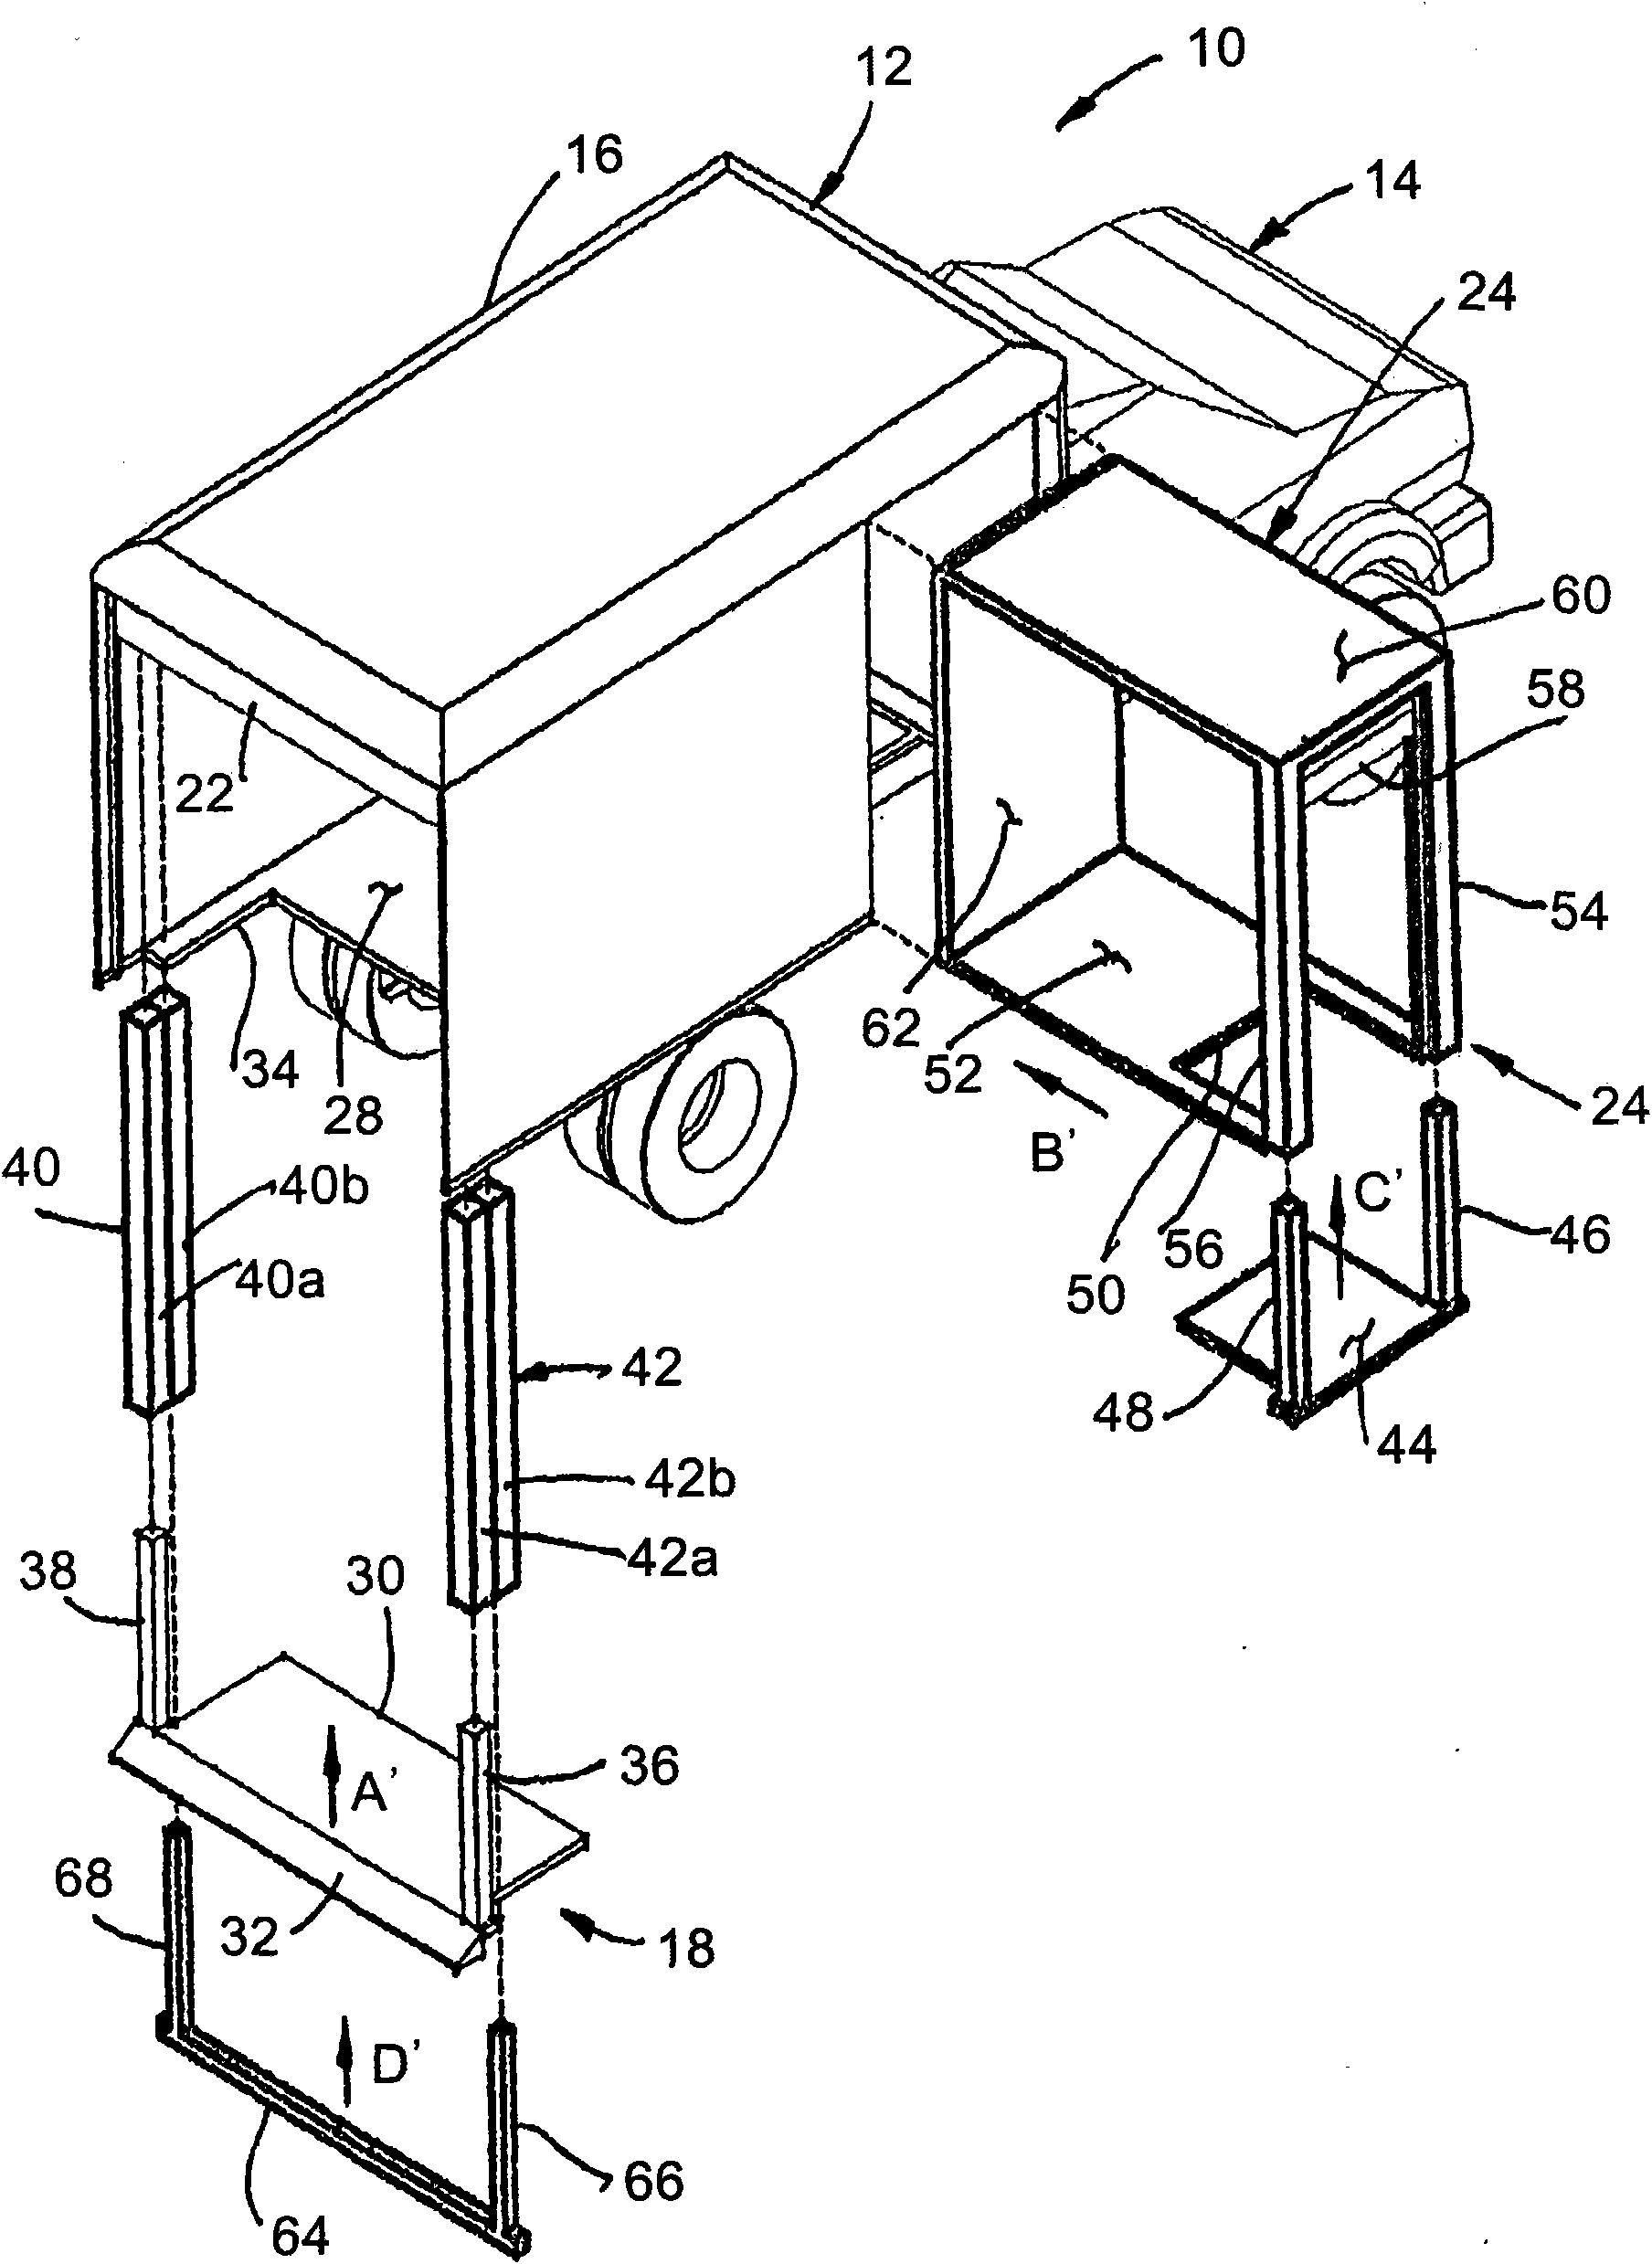 Cargo handling apparatus